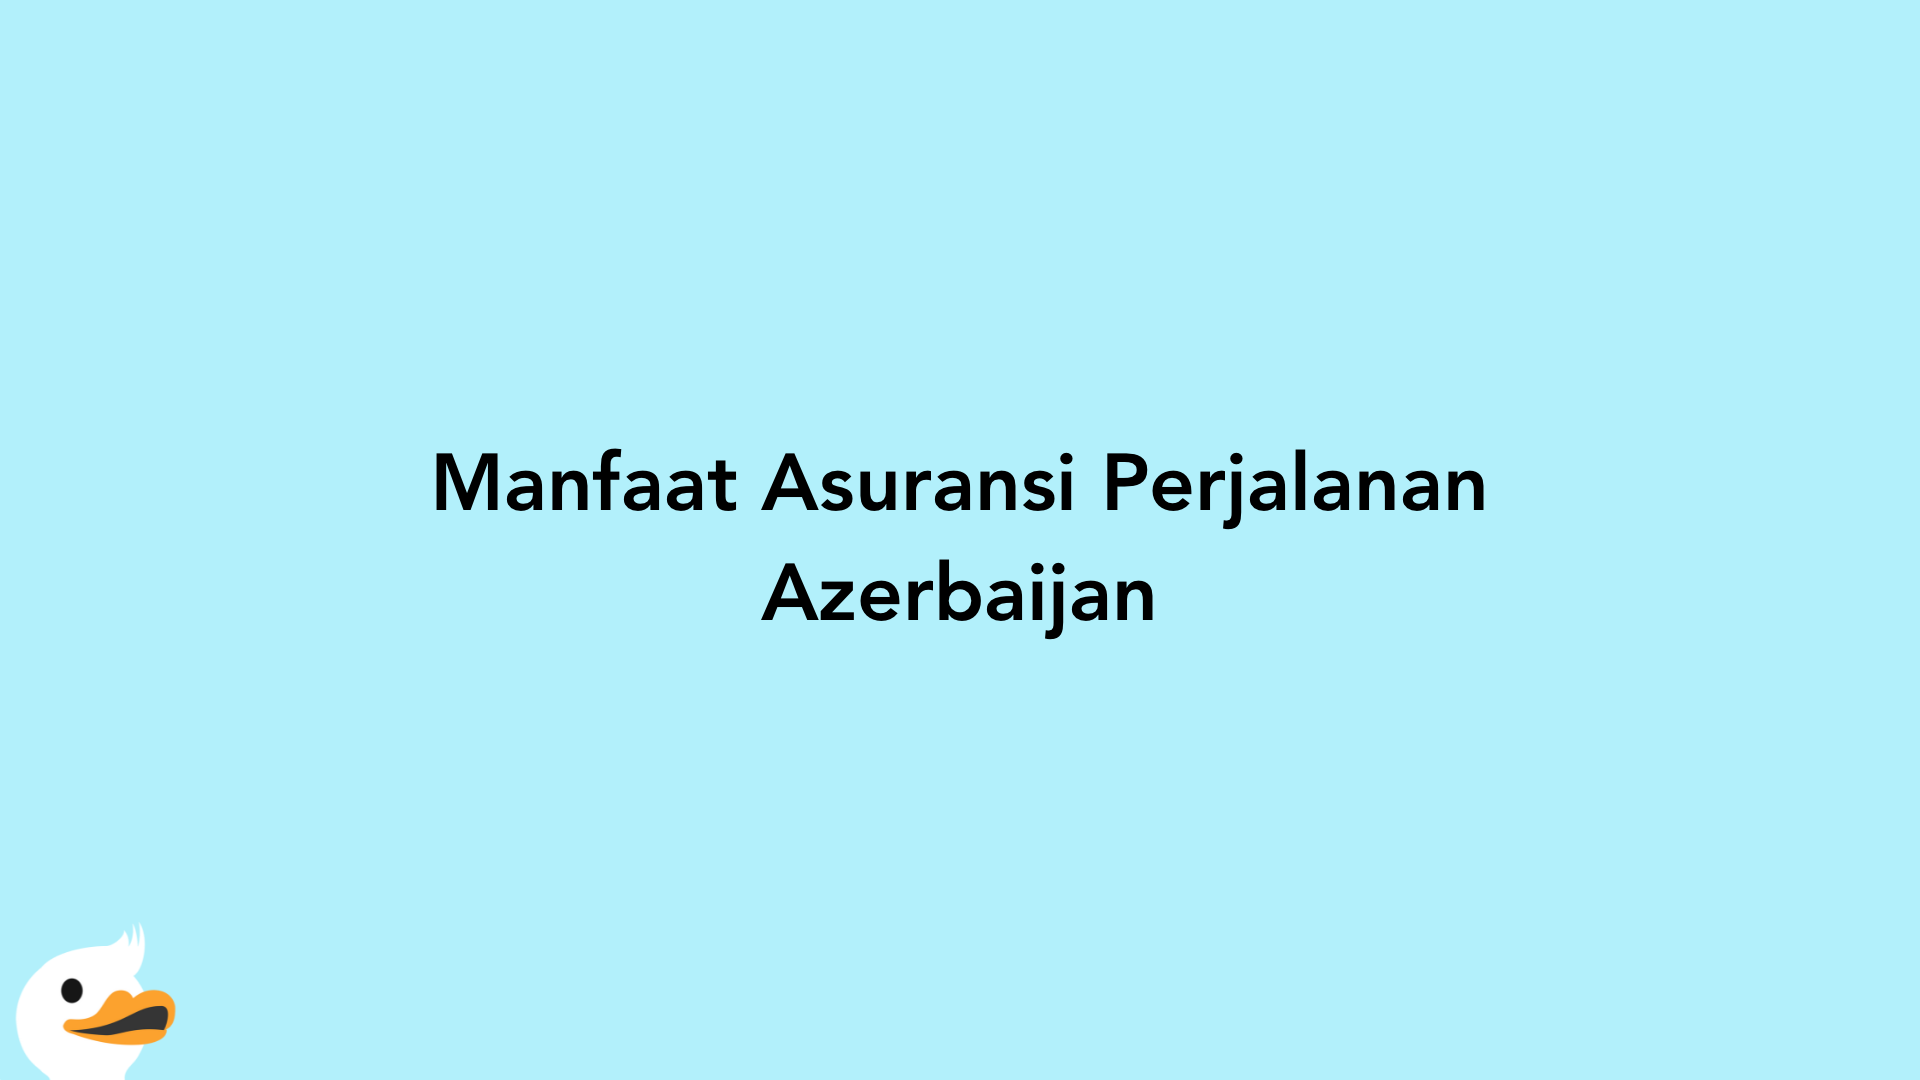 Manfaat Asuransi Perjalanan Azerbaijan